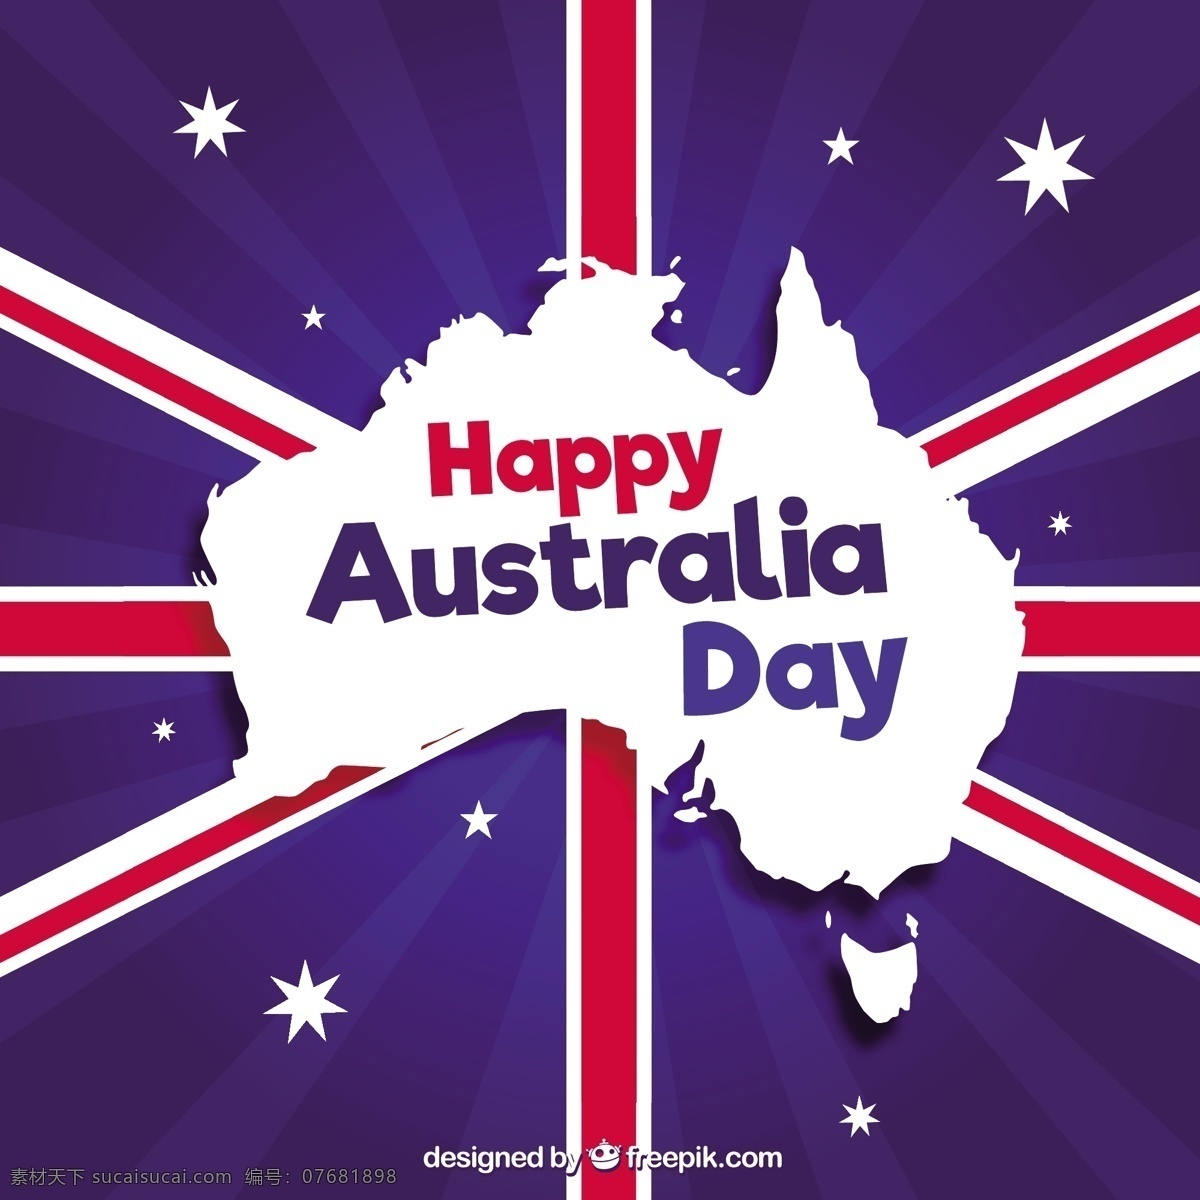 公司 背景 澳大利亚 地图 国旗 庆祝 星星 平面 平面设计 自由 阳光 星空背景 一月 爱国 民族 国家 爱国主义